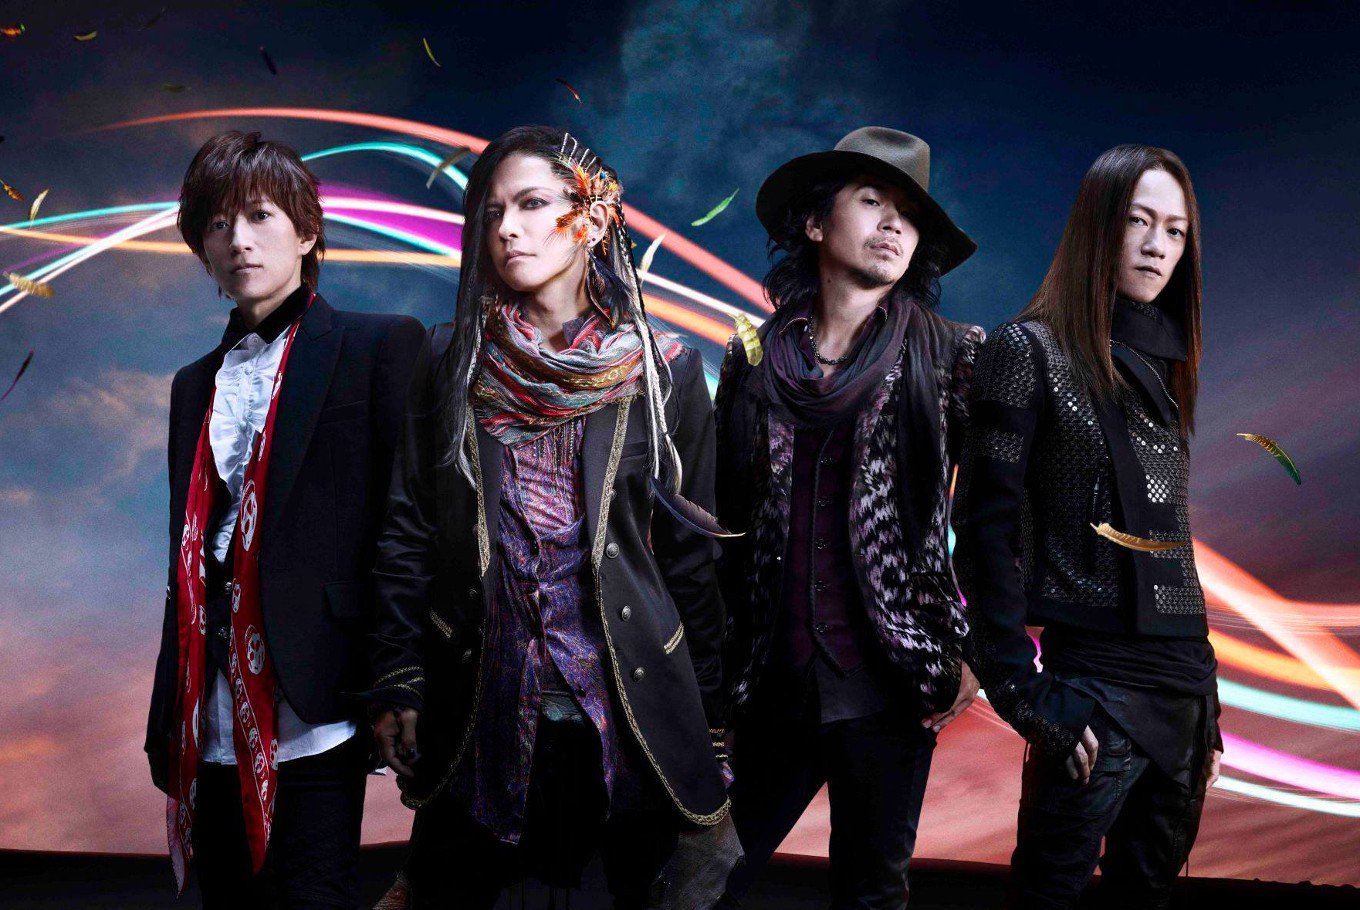 日本のロックバンド 人気ランキングtop470 21最新版 Rank1 ランク1 人気ランキングまとめサイト 国内最大級